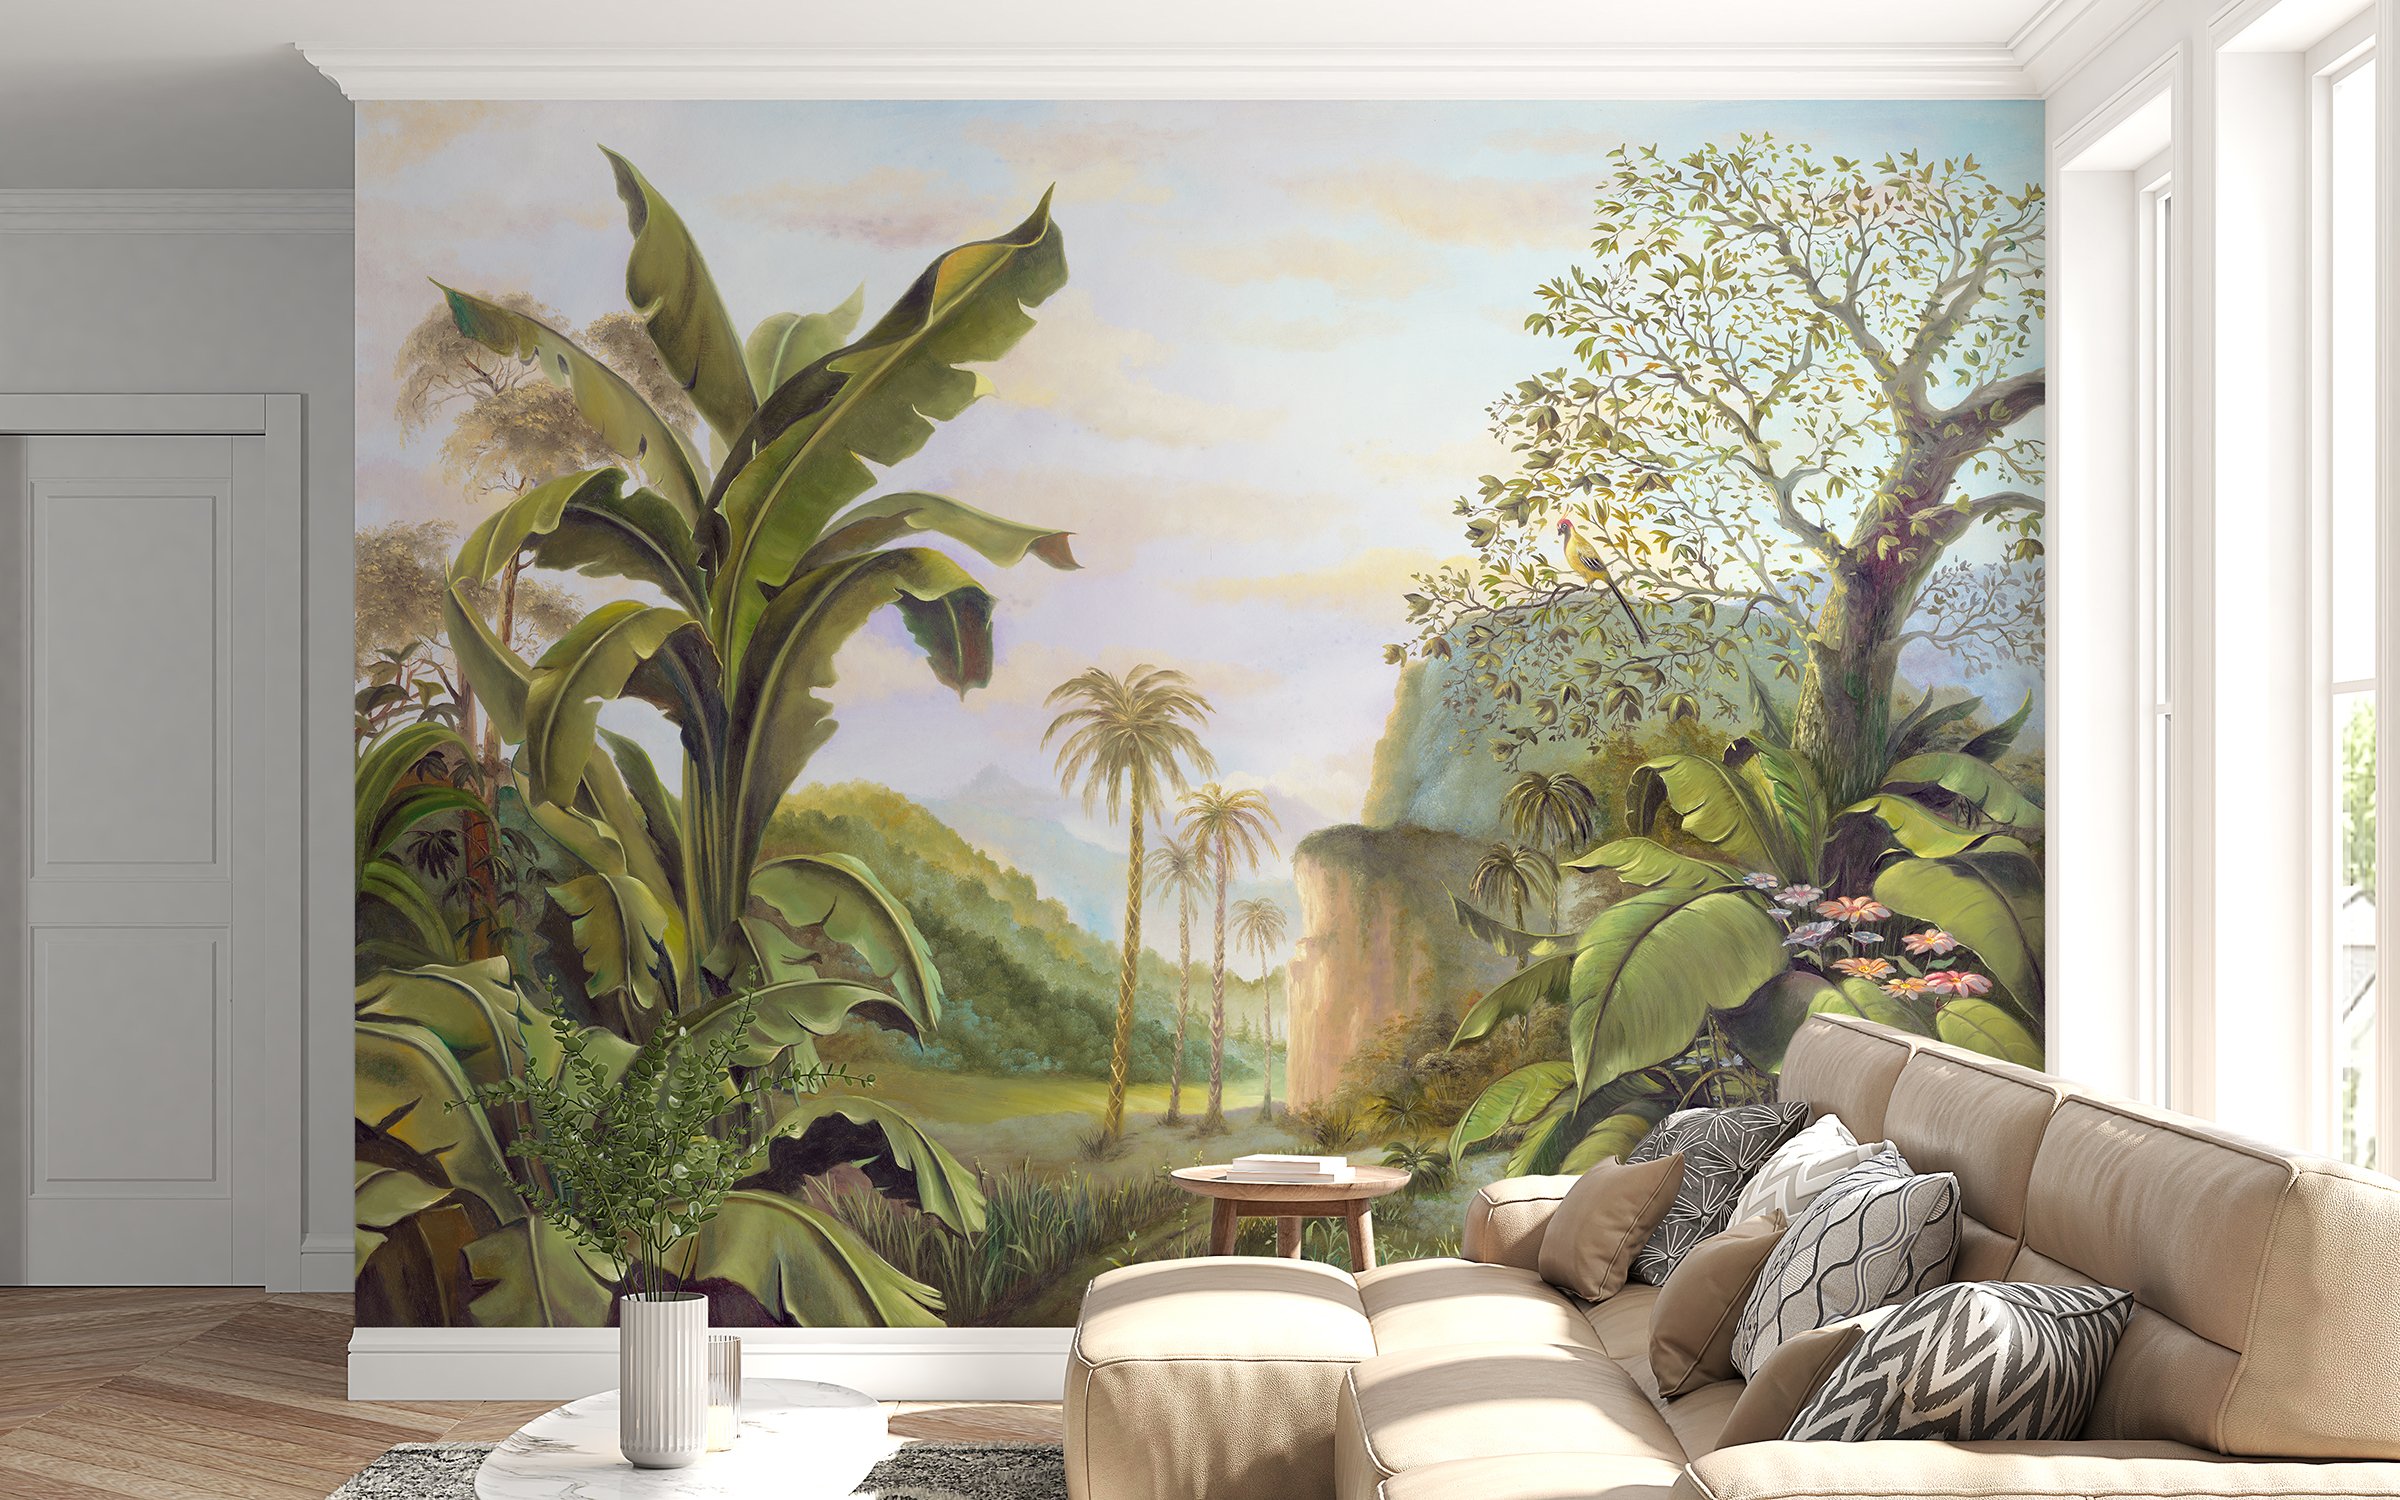 The Ultimate Wallpaper Trend in Interior Design